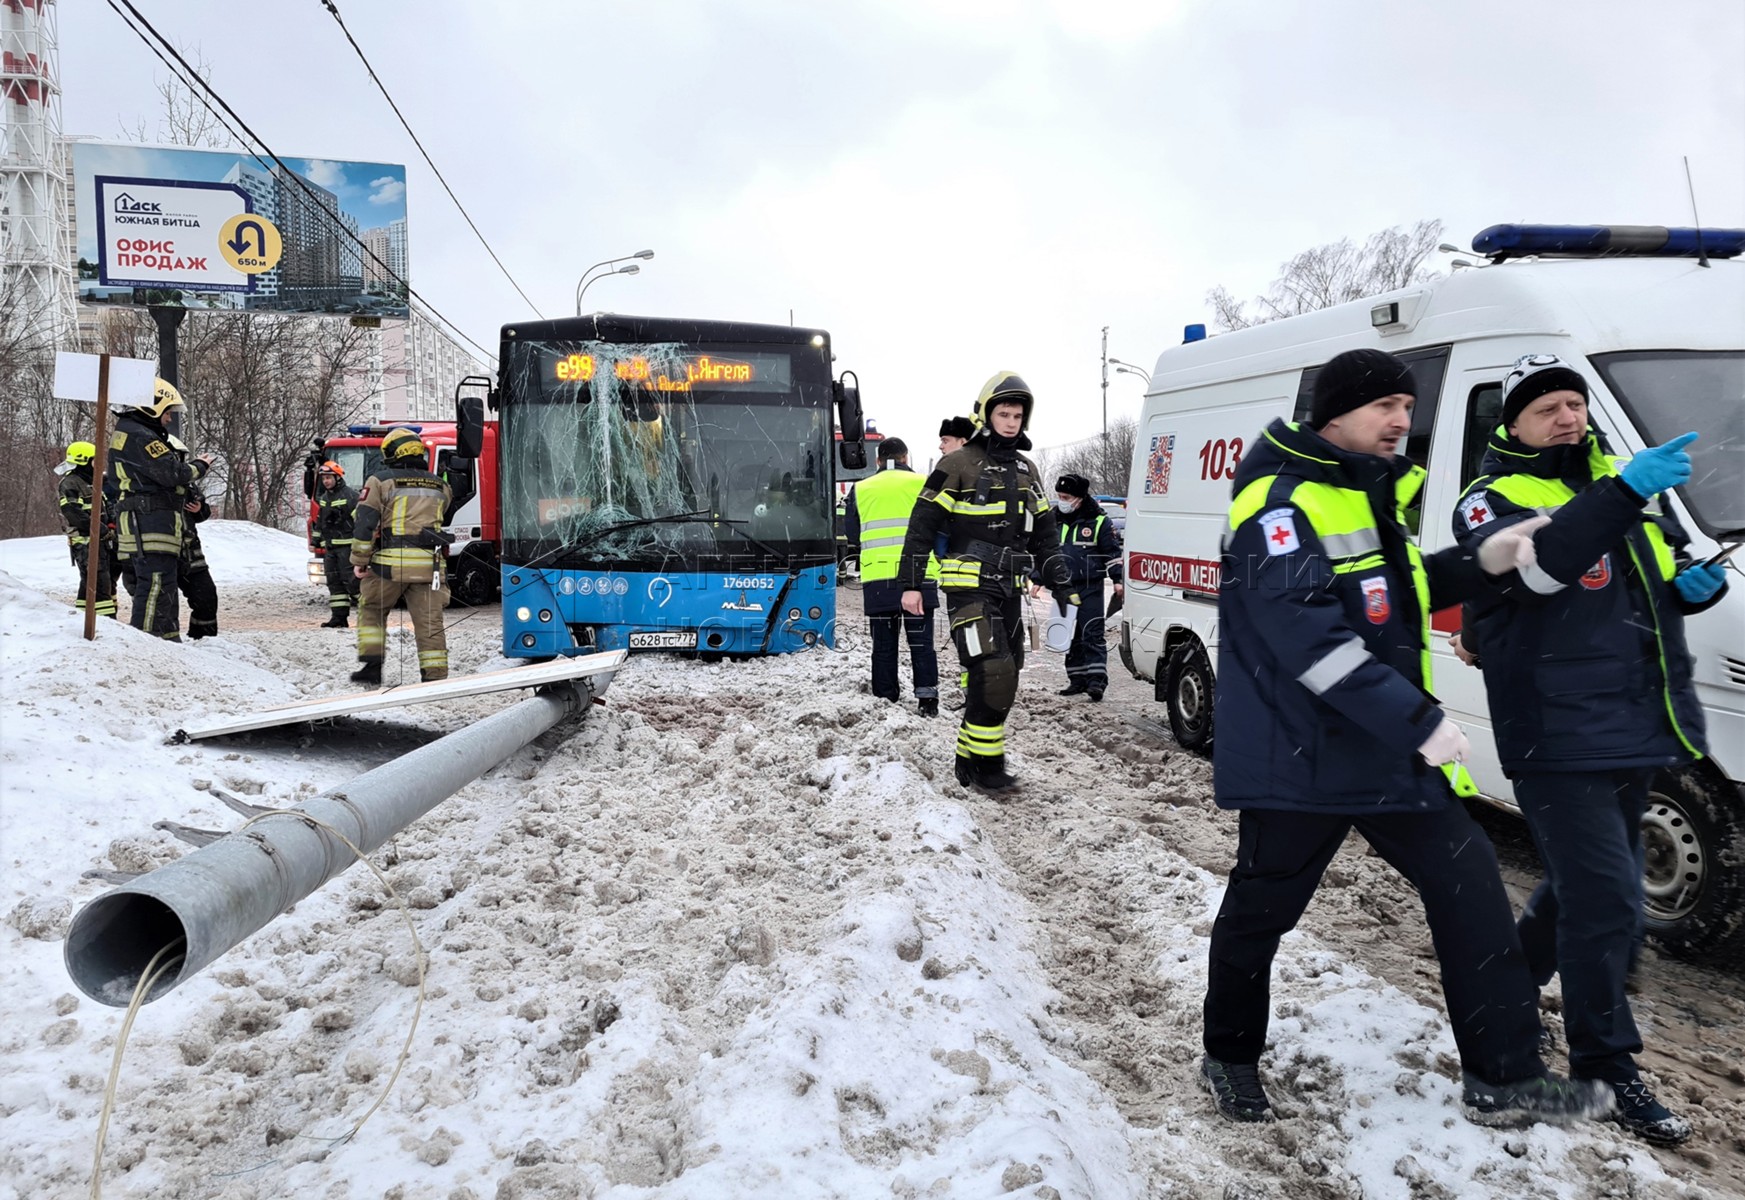 Новости москва сегодня последние свежие видео. ДТП С автобусом в Москве вчера. Авария автобуса в Москве вчера.